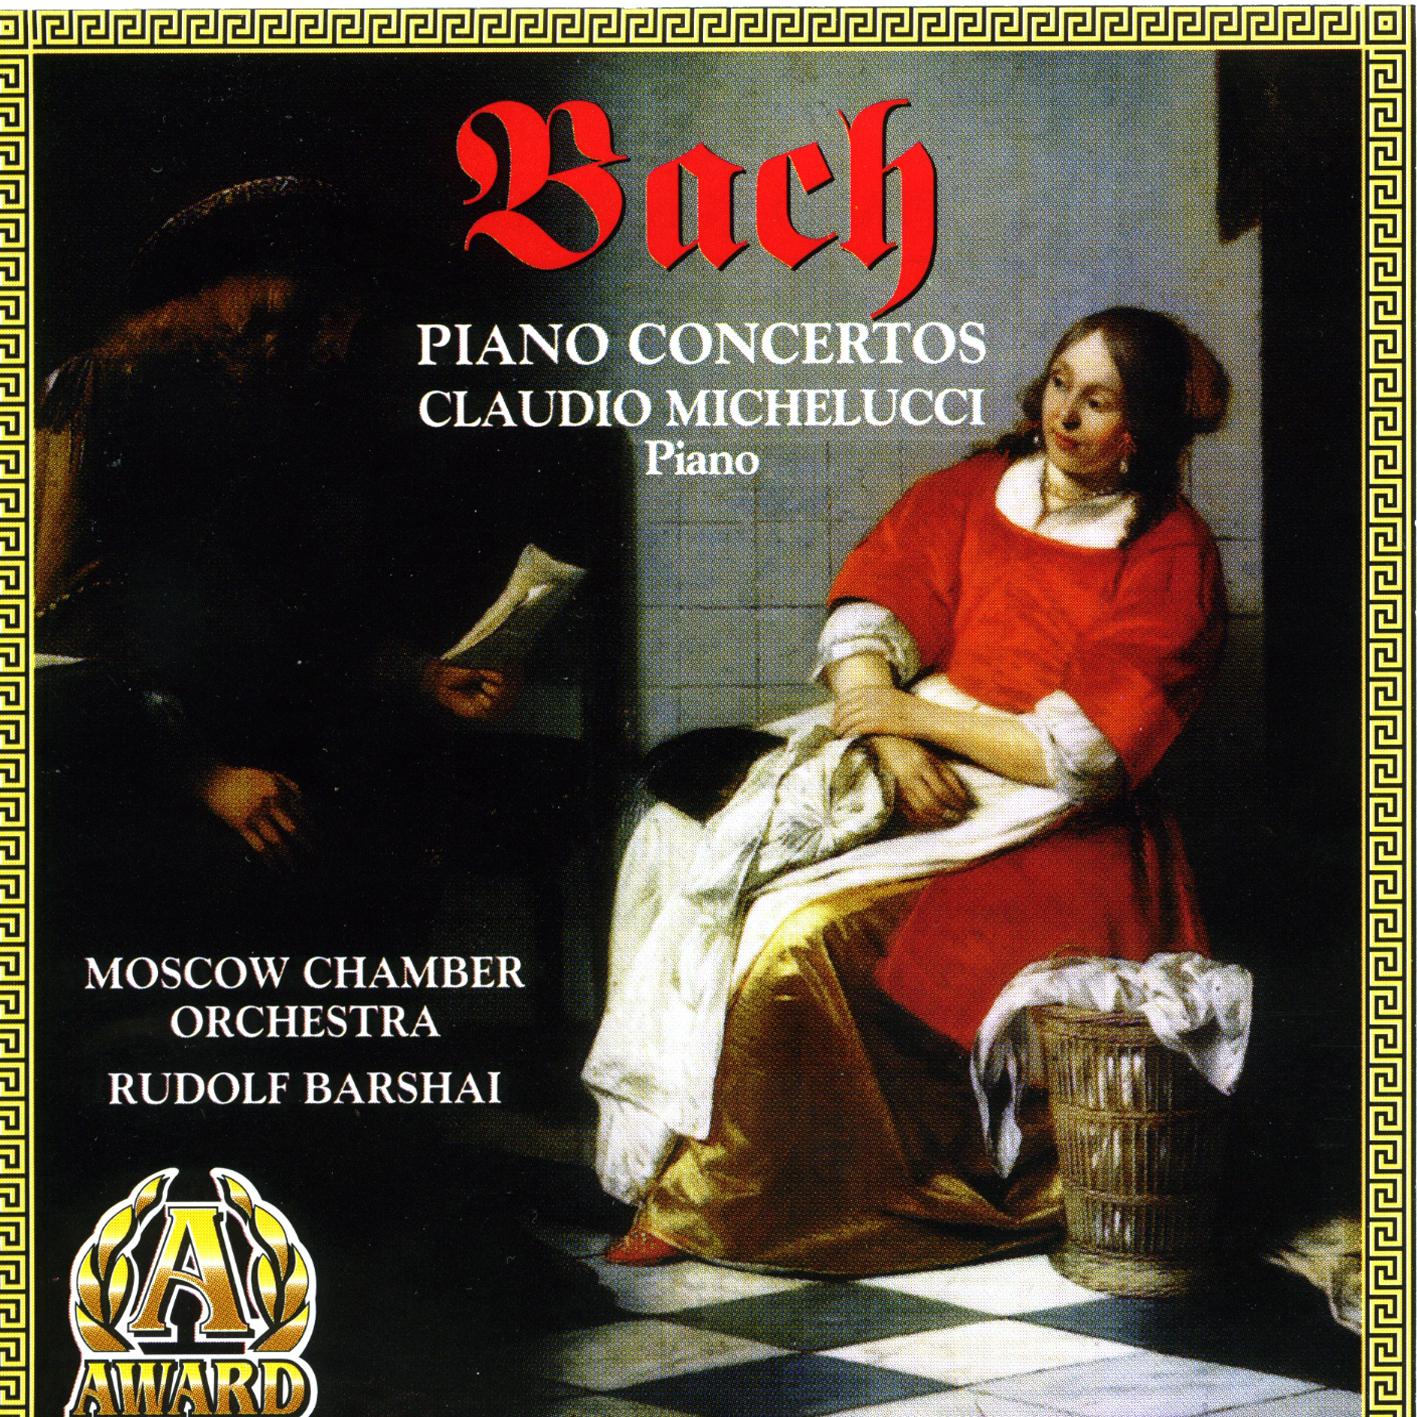 Piano Concerto In Fm BWV 1056: Allegro, Largo, Presto